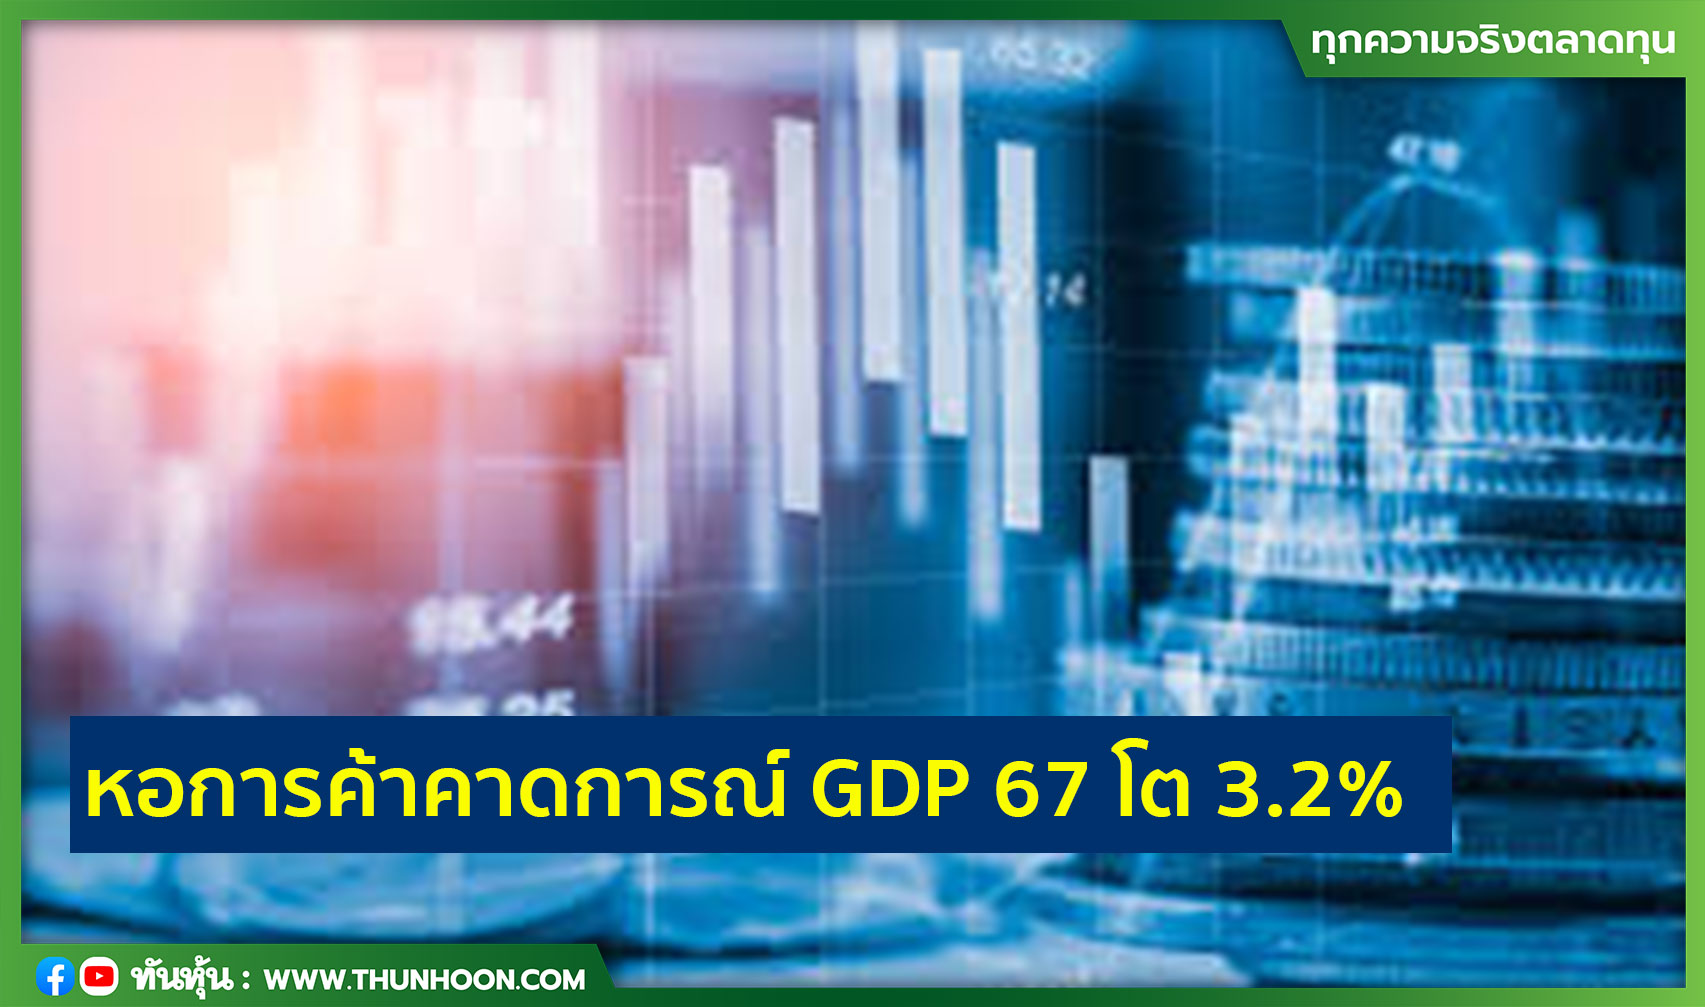 หอการค้าคาดการณ์ GDP 67 โต 3.2%